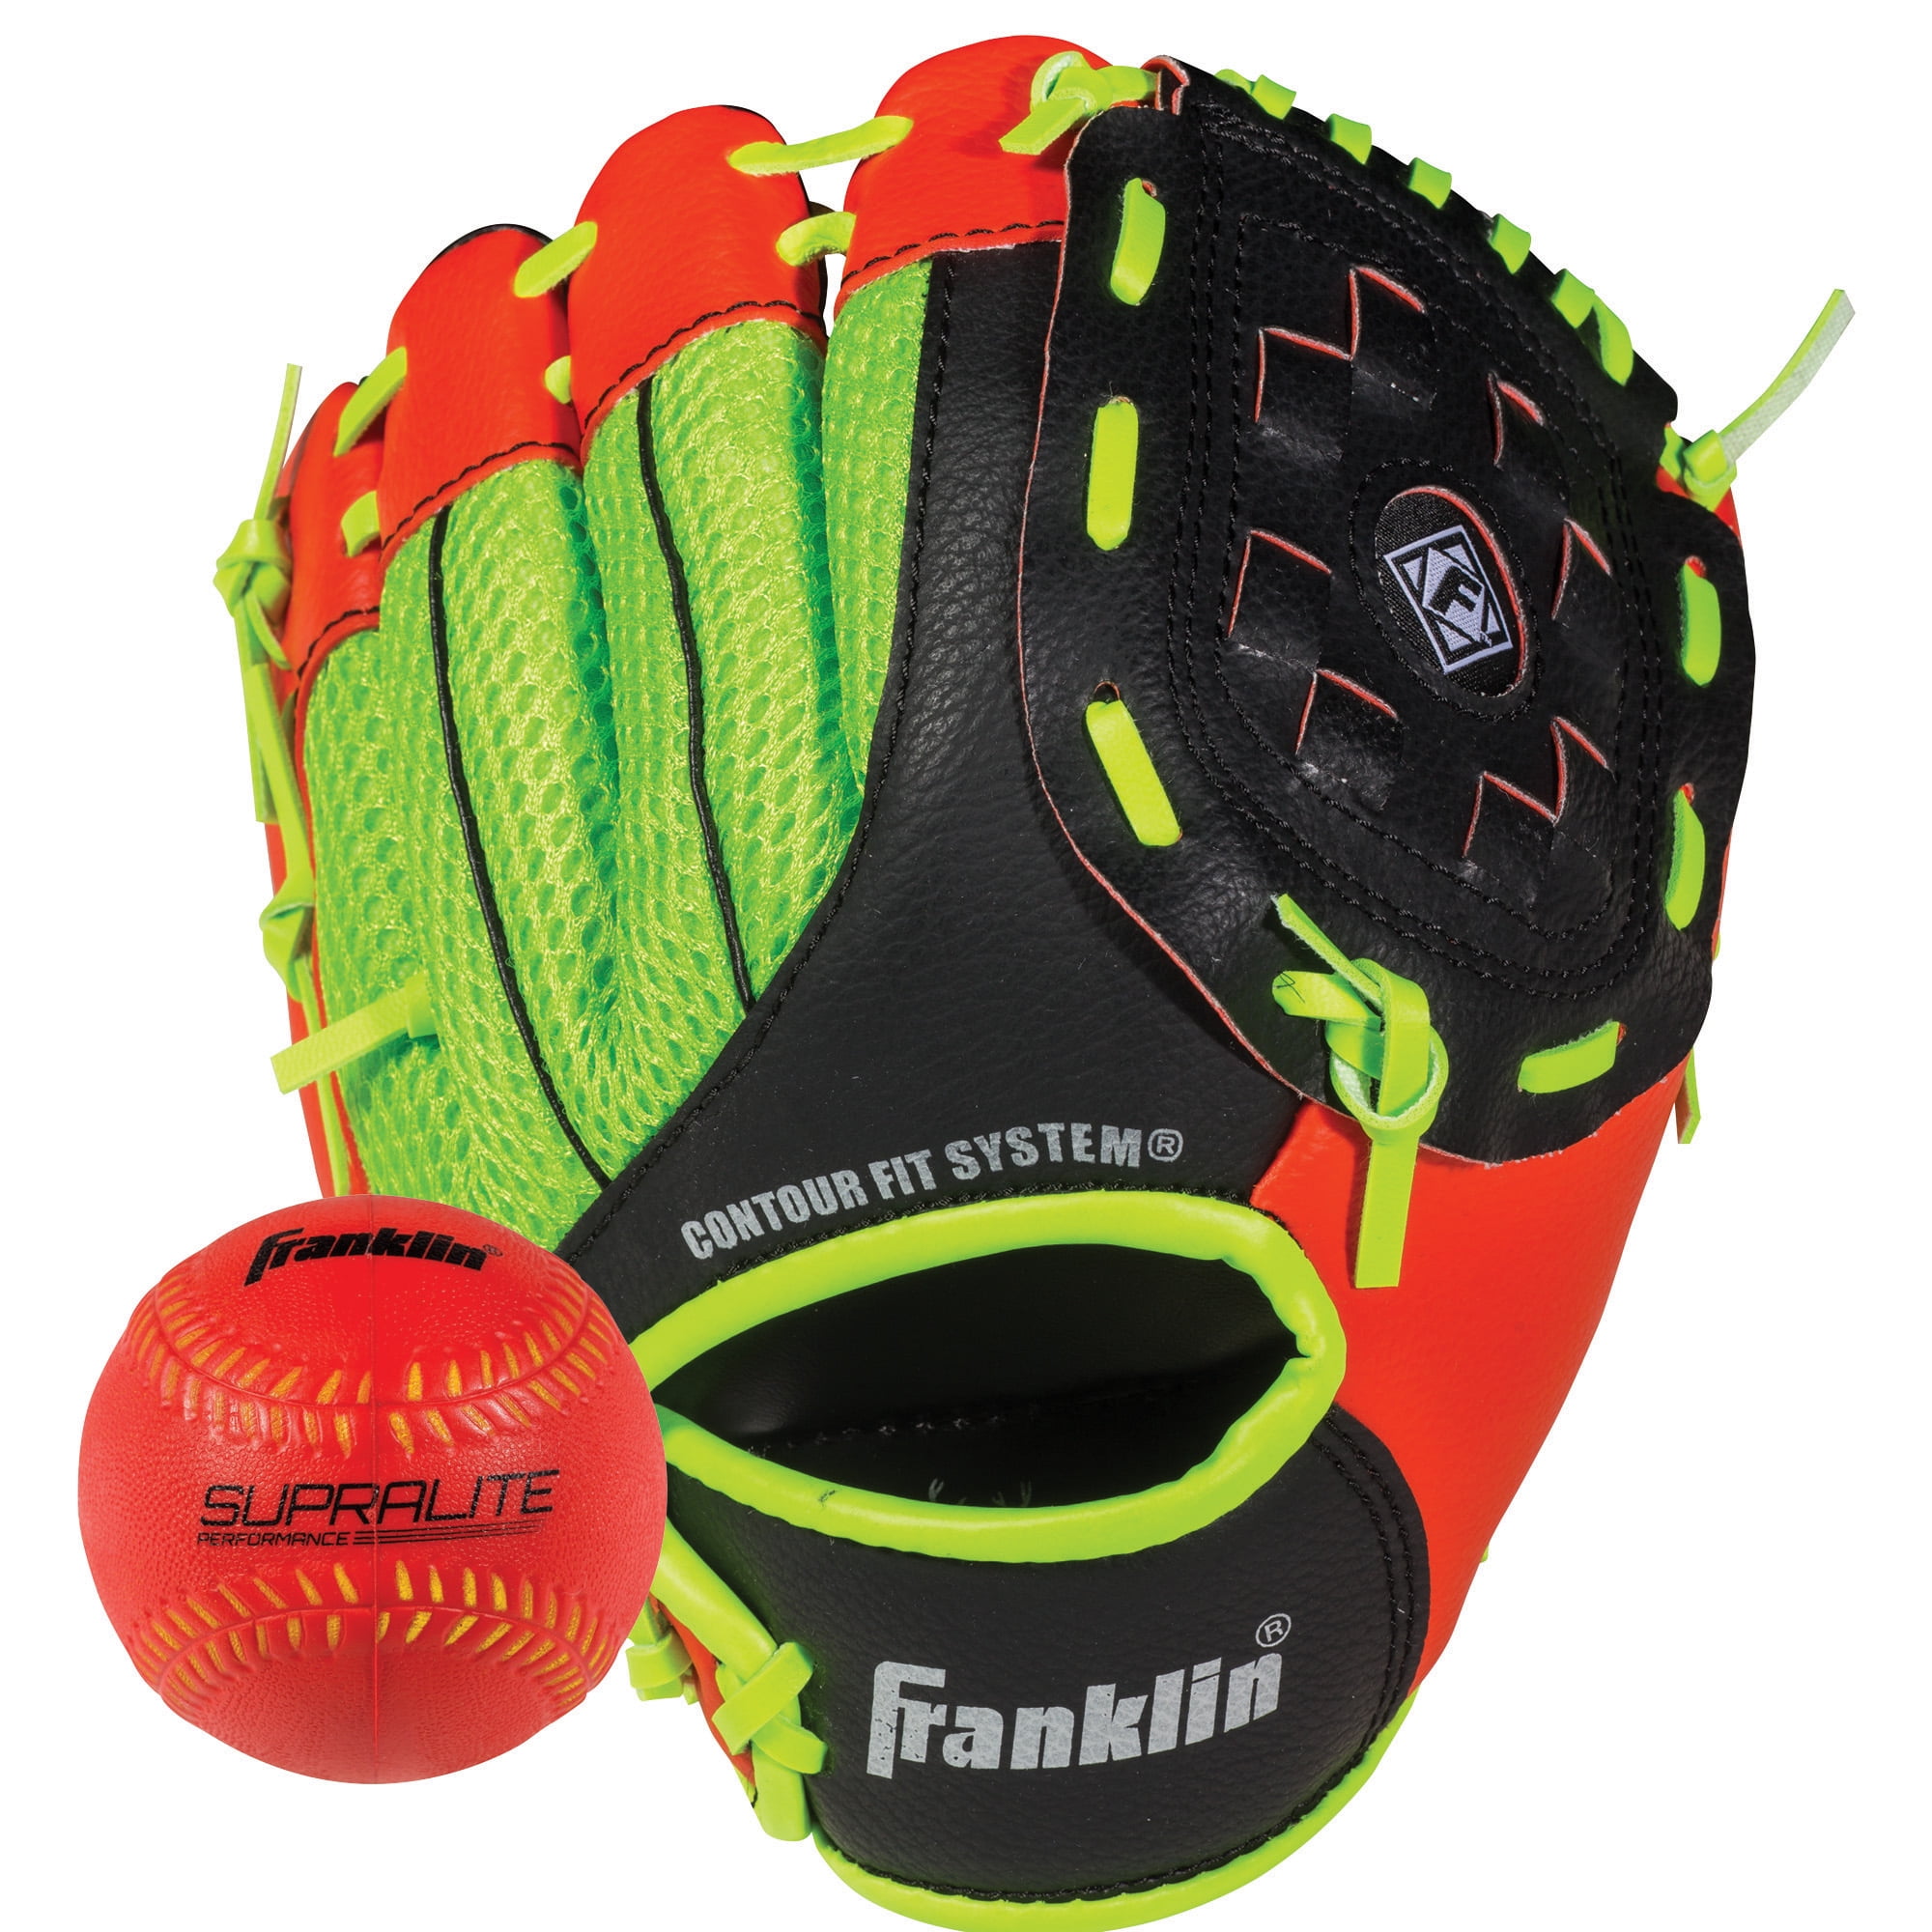 Soft Foam 9" Franklin Teeball Fielding Glove Baseball Air-Tech mit Ball 